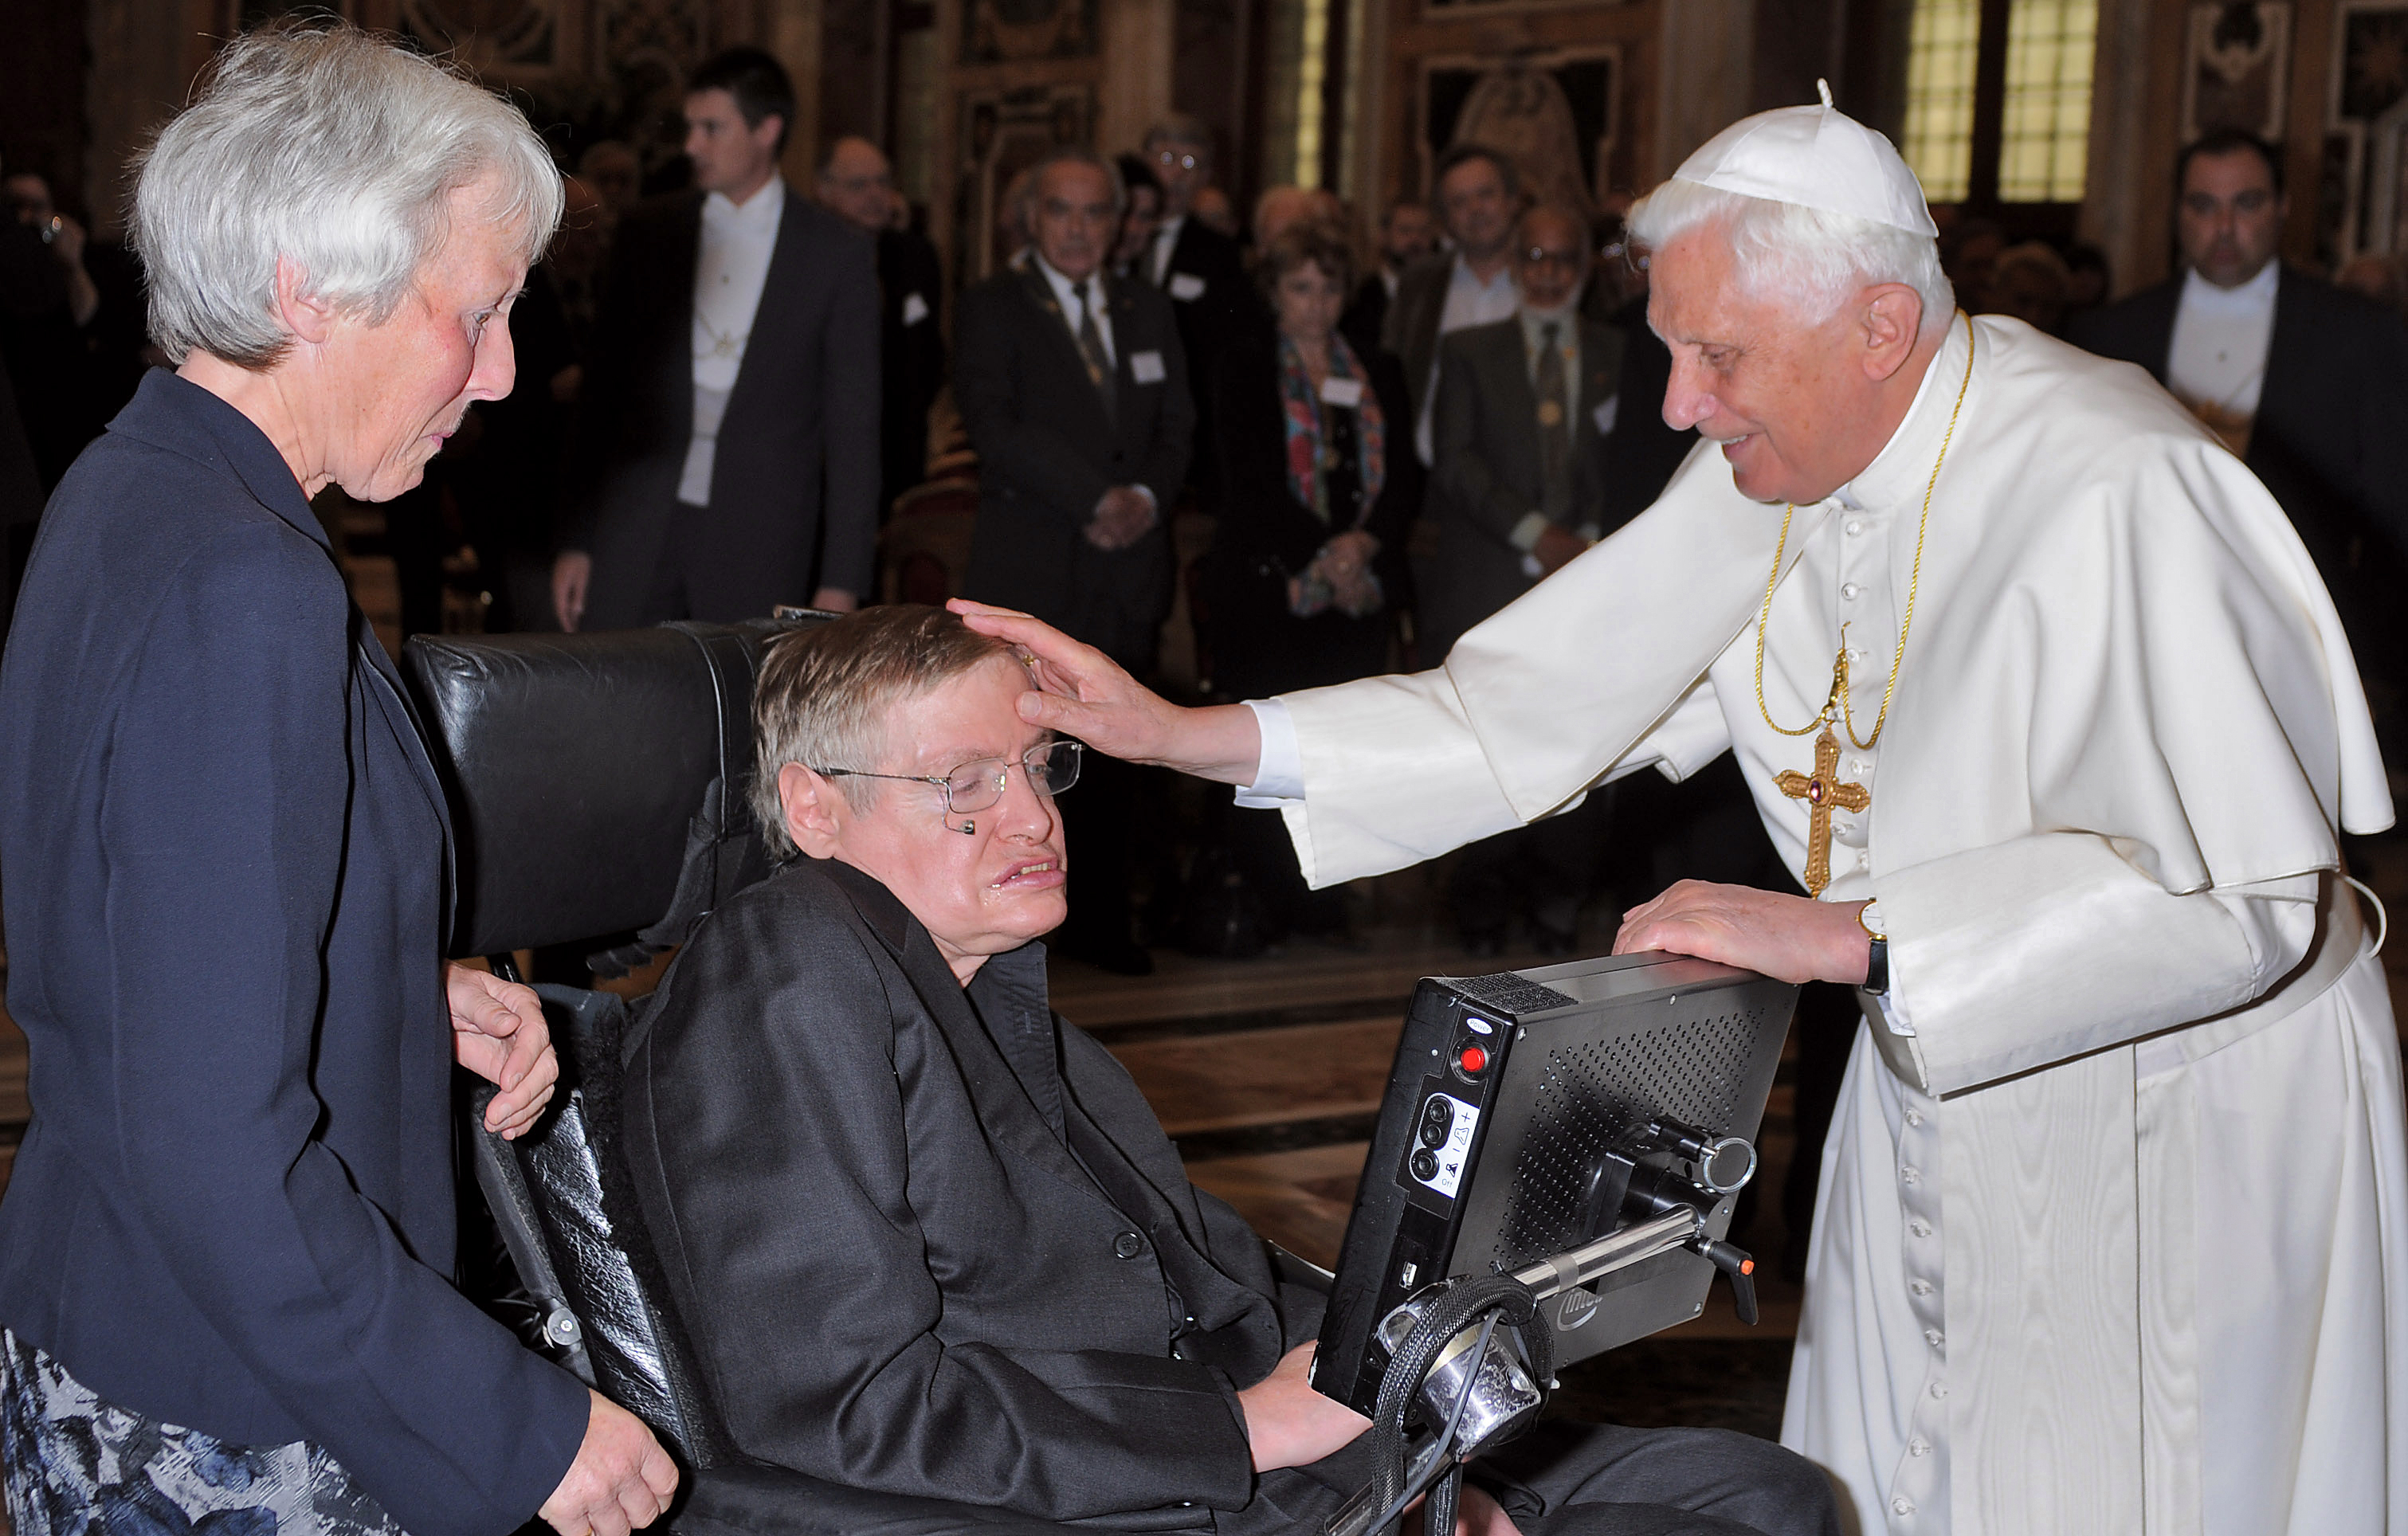 XVI. Benedek pápa audencián fogadja Stephen Hawkingot